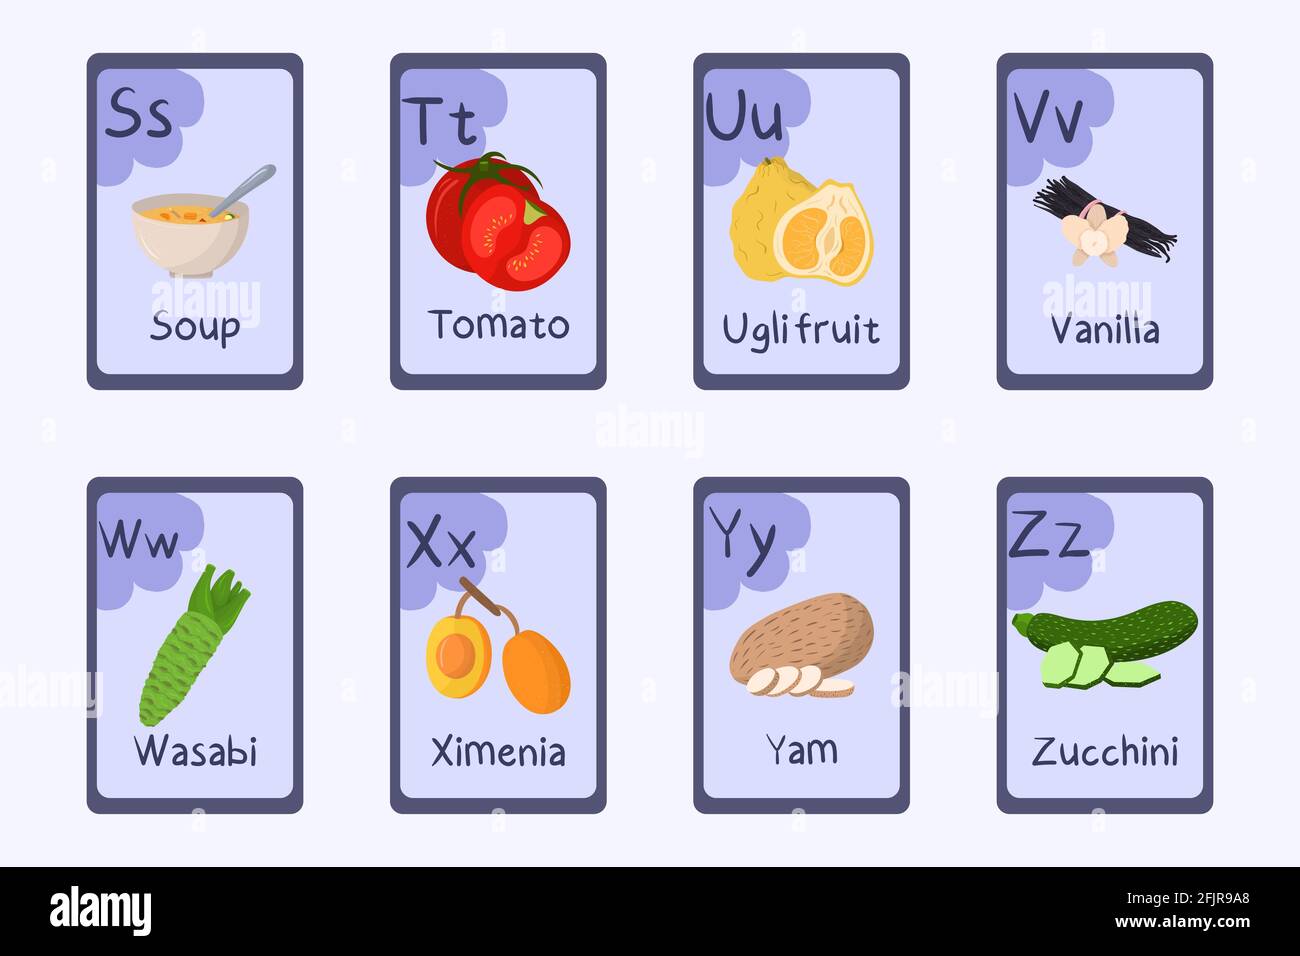 Letra alfabética de colores S, T, U, V, W, X, Y, Z - sopa, tomate, fruta de  los ugli, Vainilla, wasabi, ximenia, yam zucchini Tarjetas temáticas de  alimentos para enseñar con alimentos